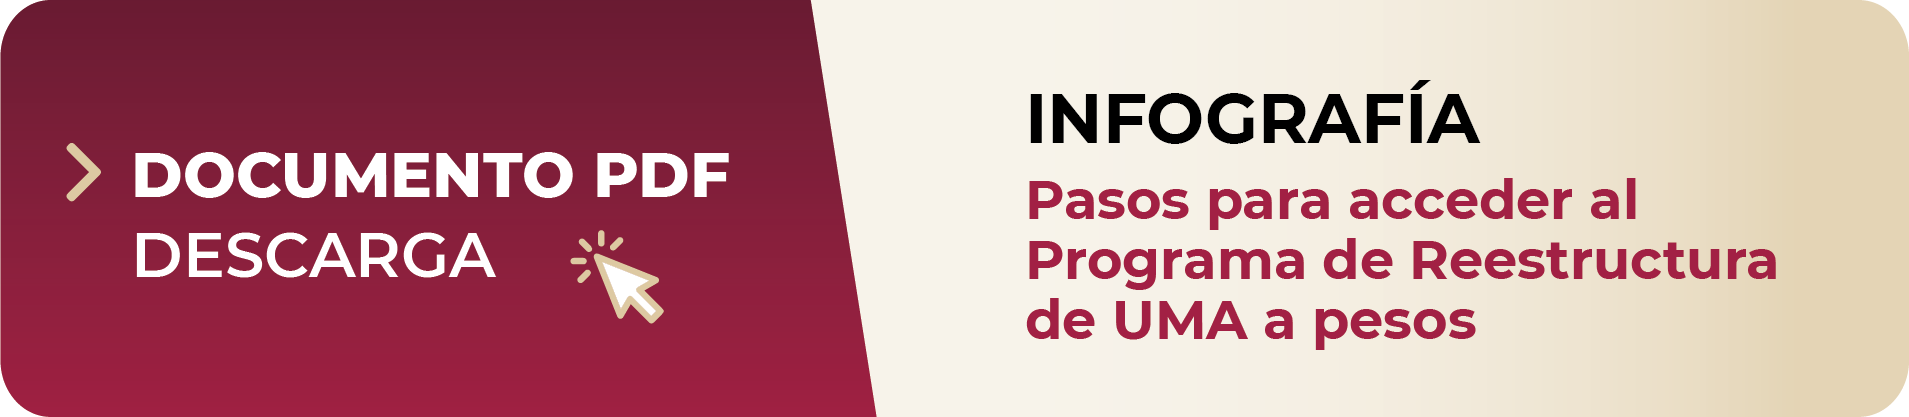 Infografía, Pasos para acceder al Programa de Reestructura de UMA a pesos, Documento PDF descarga